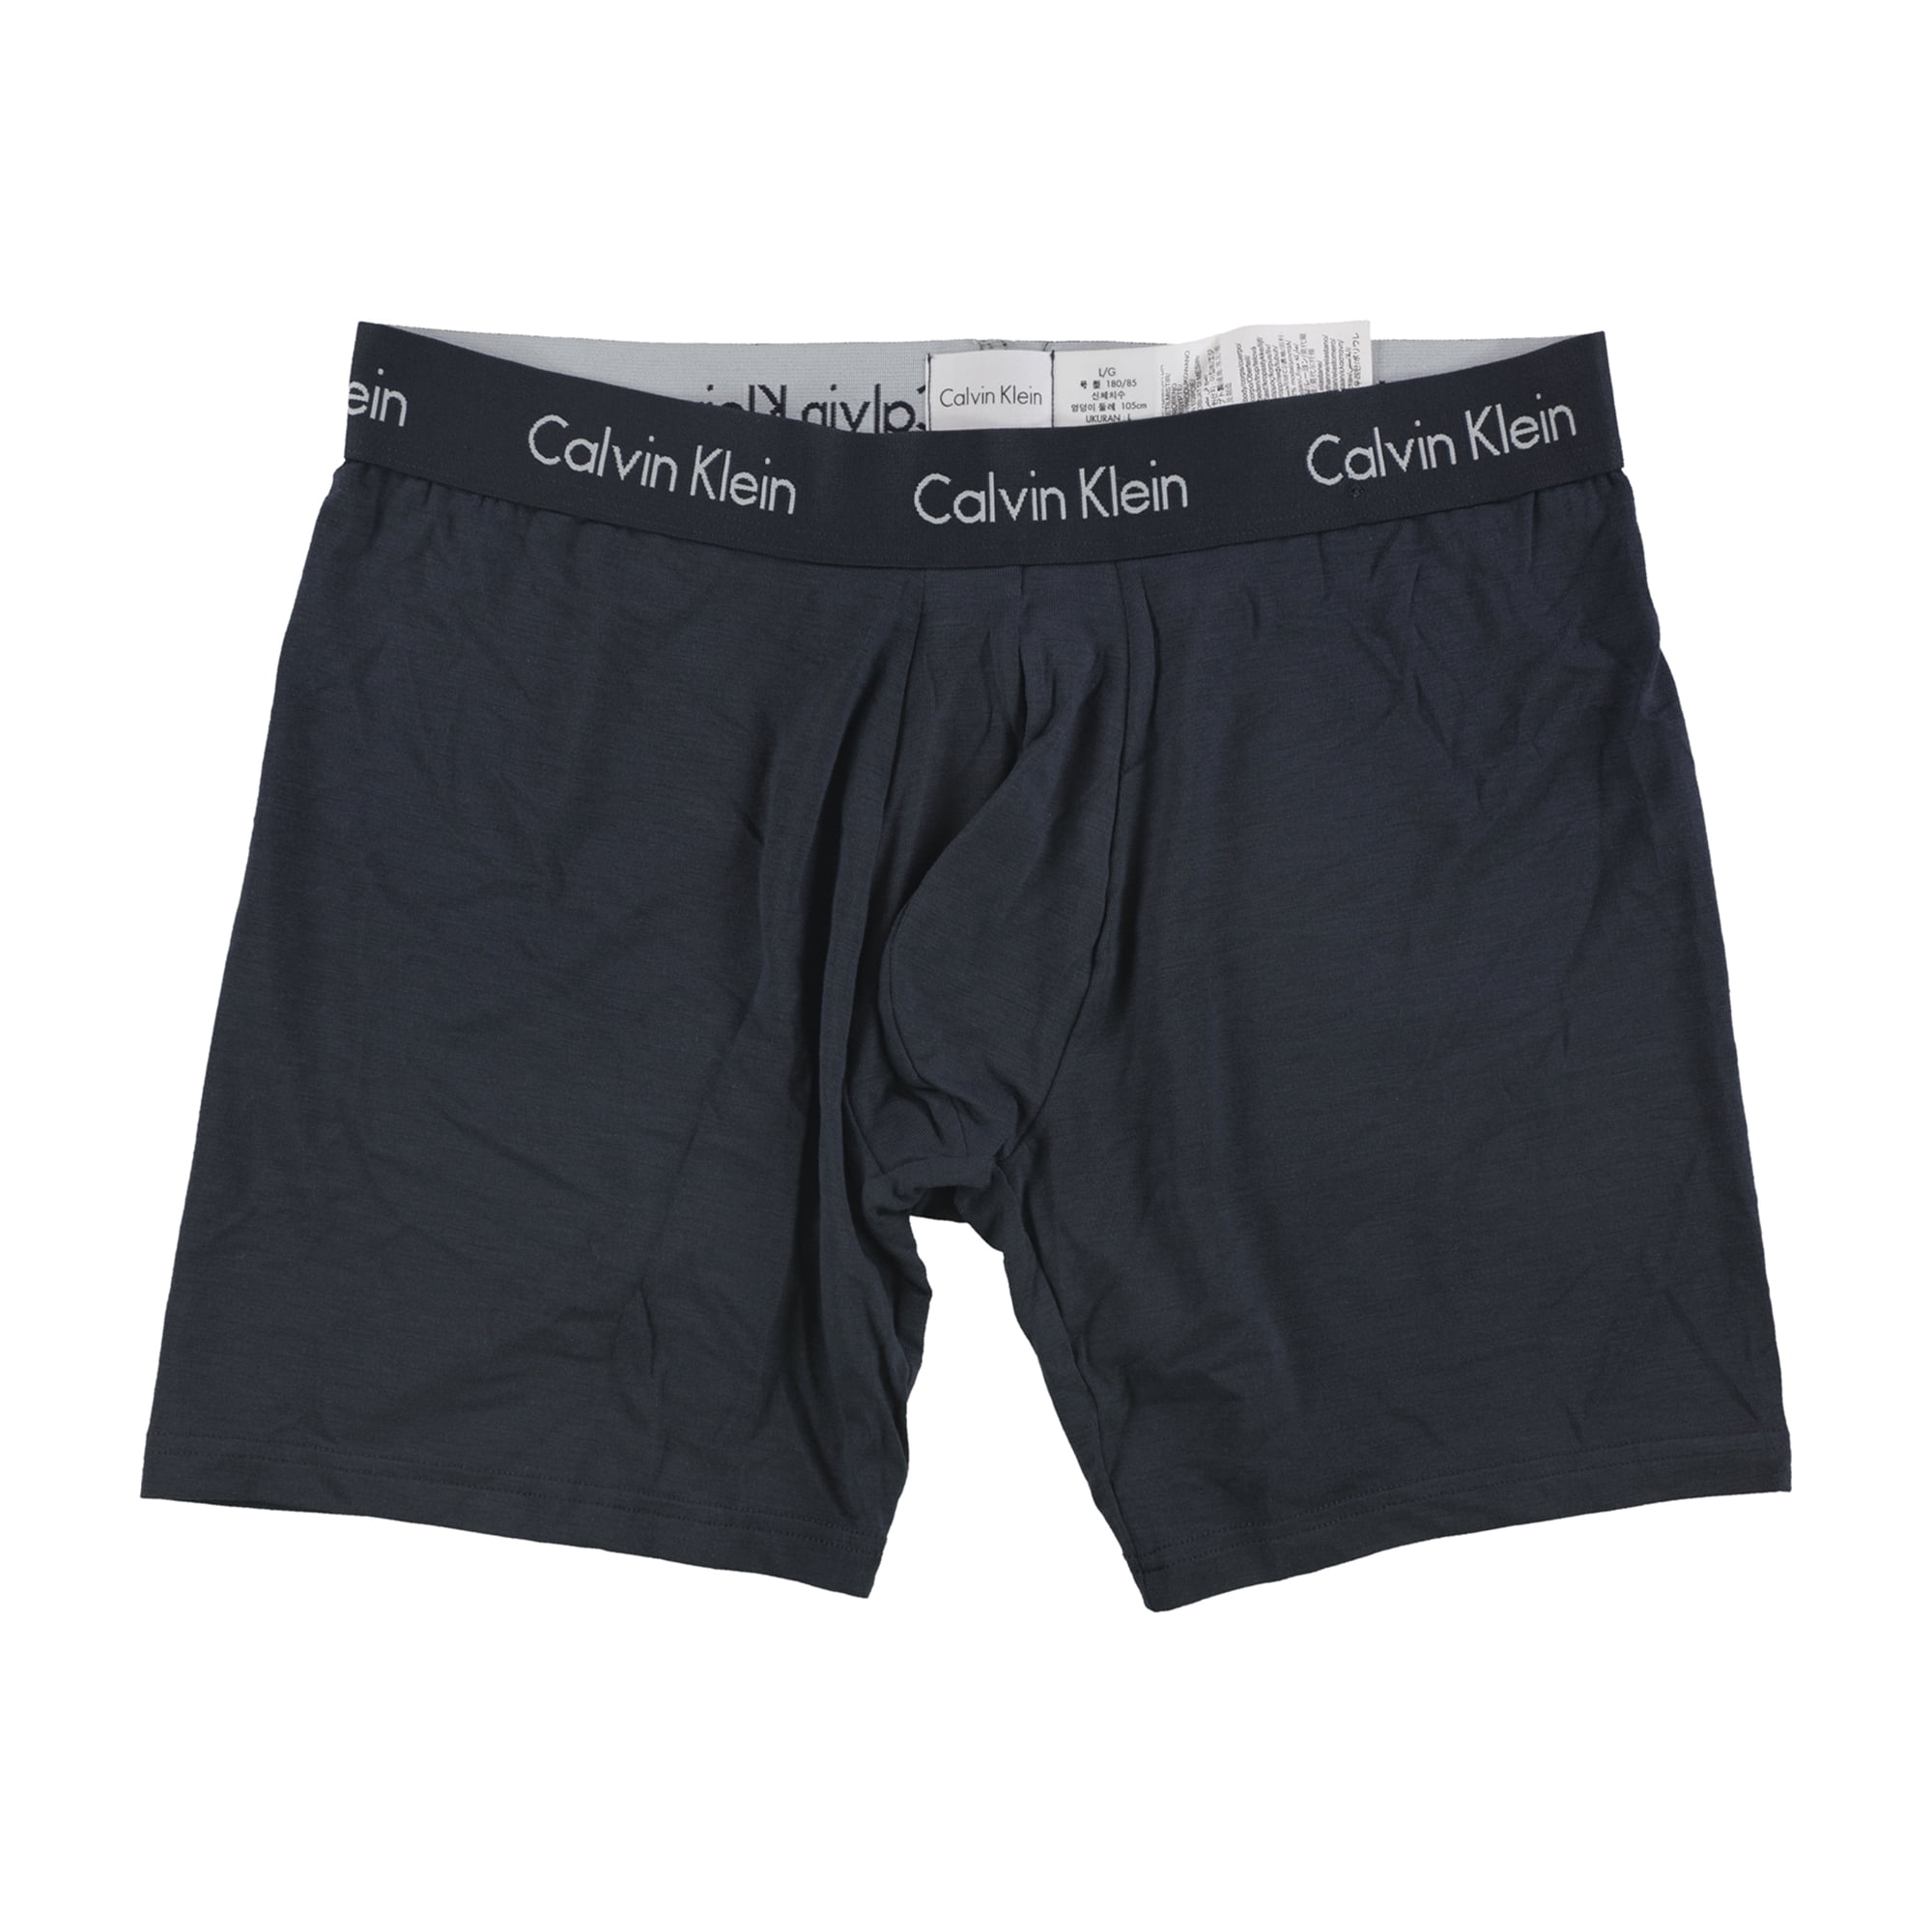 Calvin Klein Mens Body Modal Underwear Boxer Briefs 